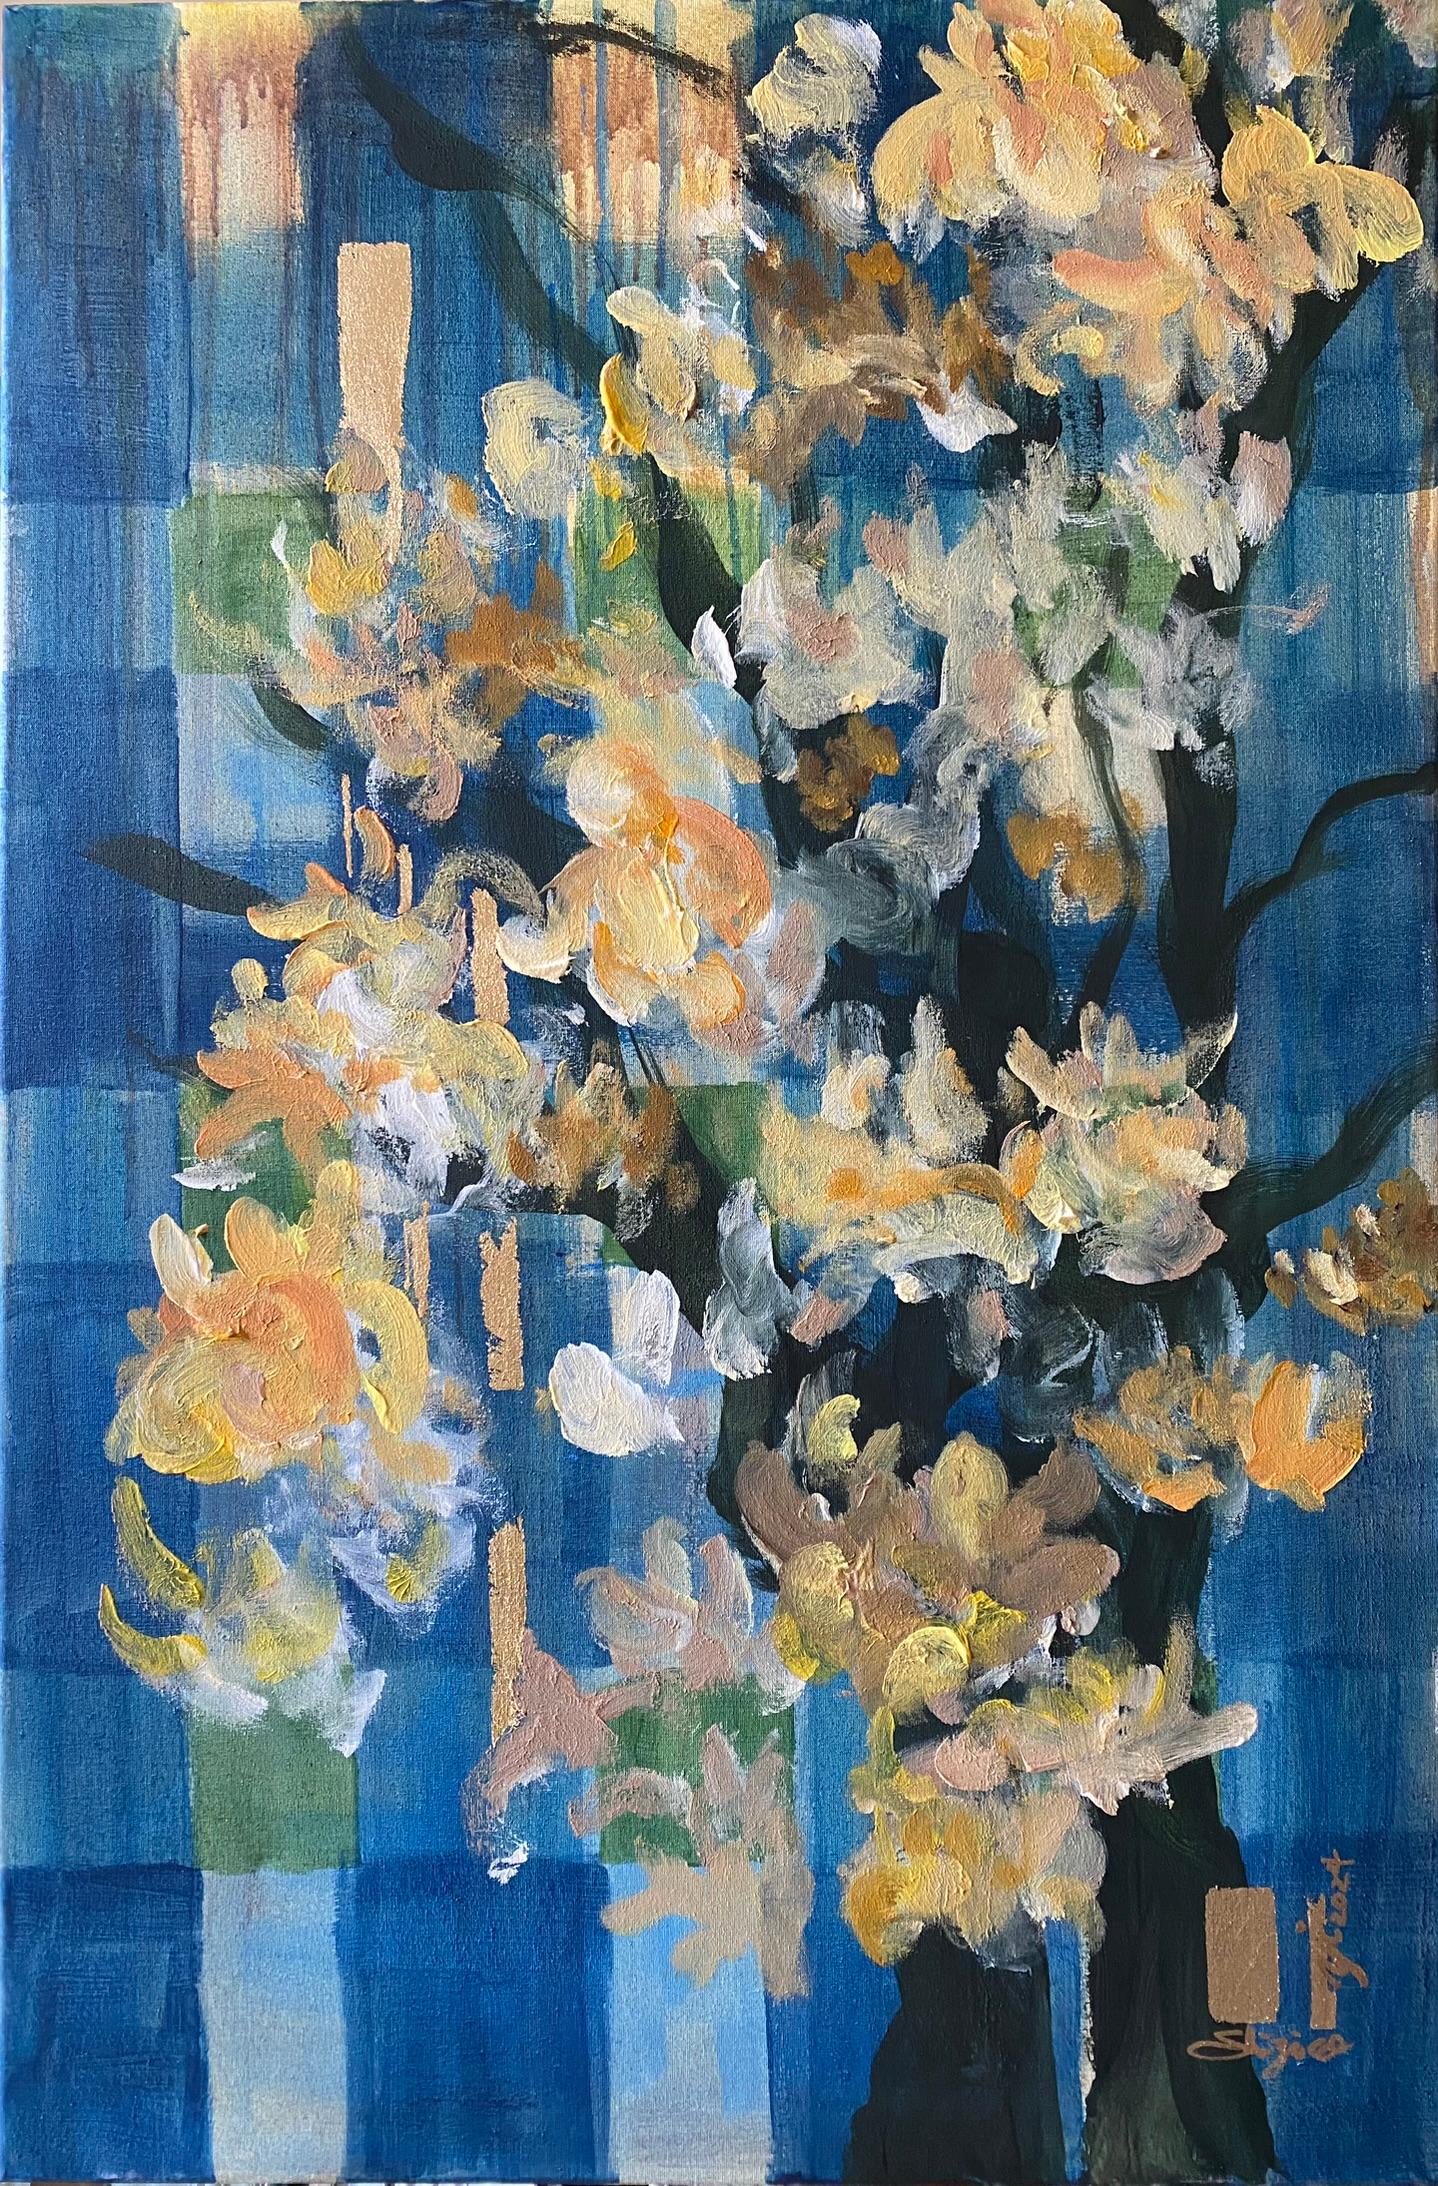 Shizico Yi Landscape Painting - Original-Large-Magnolias-Weaver Series-Feat. Scottish Tartan-UK Awarded Artist